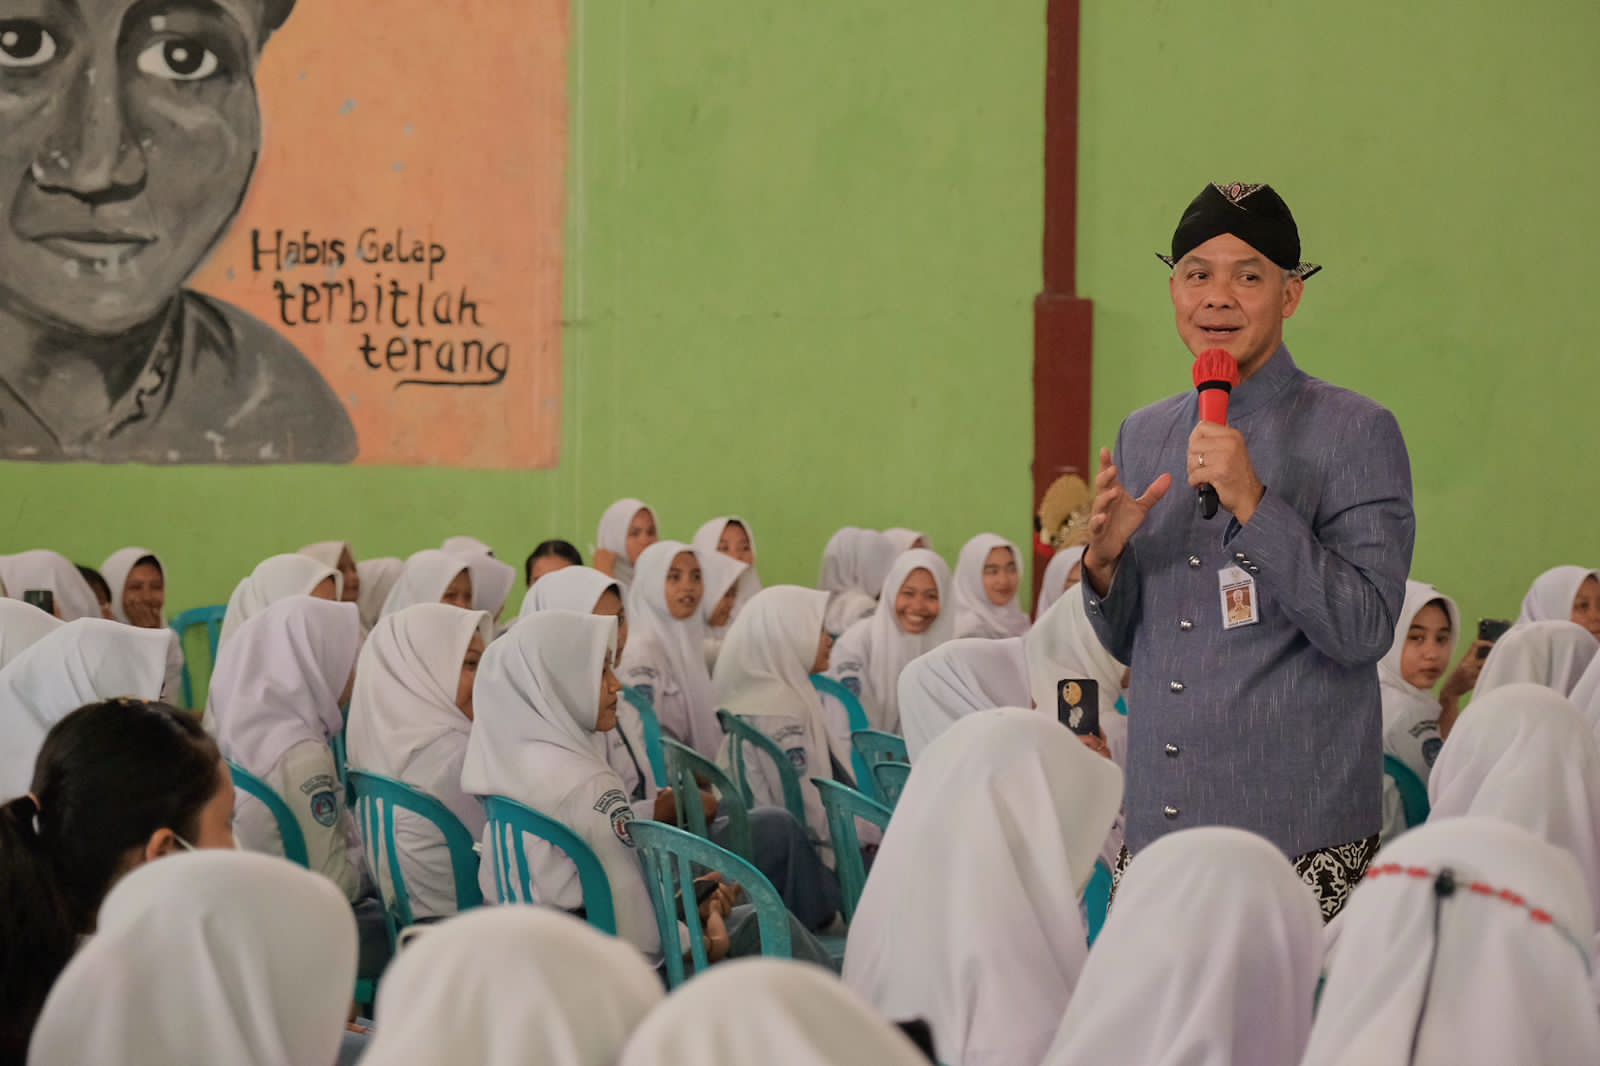 Gubernur Mengajar di SMAN 1 Kradenan, Ganjar Optimis Indonesia Emas 2045 Terwujud 